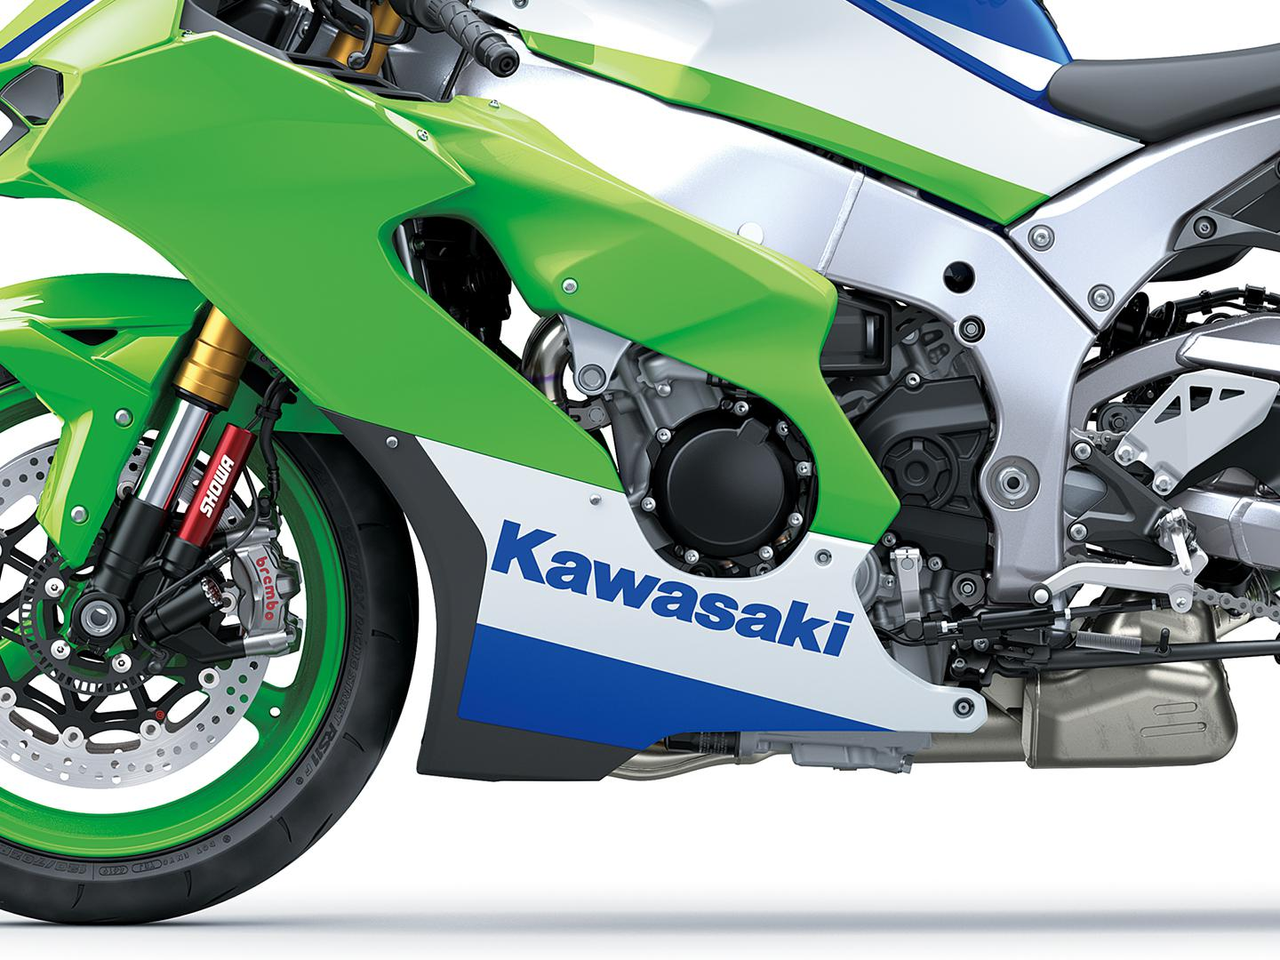 The Kawasaki Side Logo